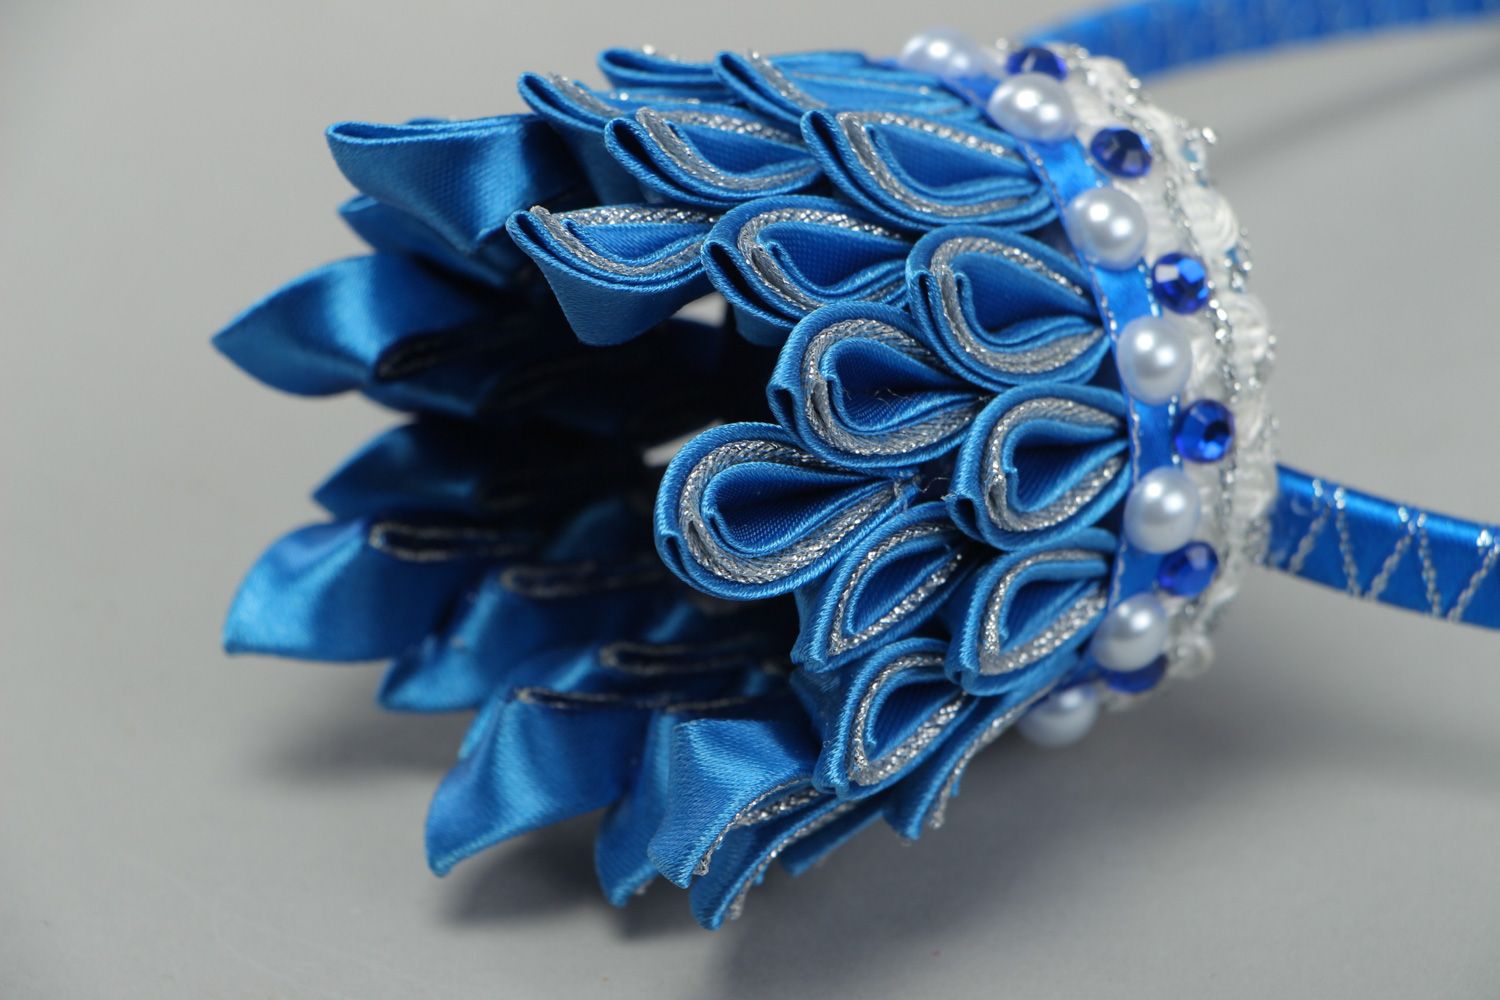 Обруч на голову с короной из репсовых лент синий женский ручной работы в технике канзаши фото 3